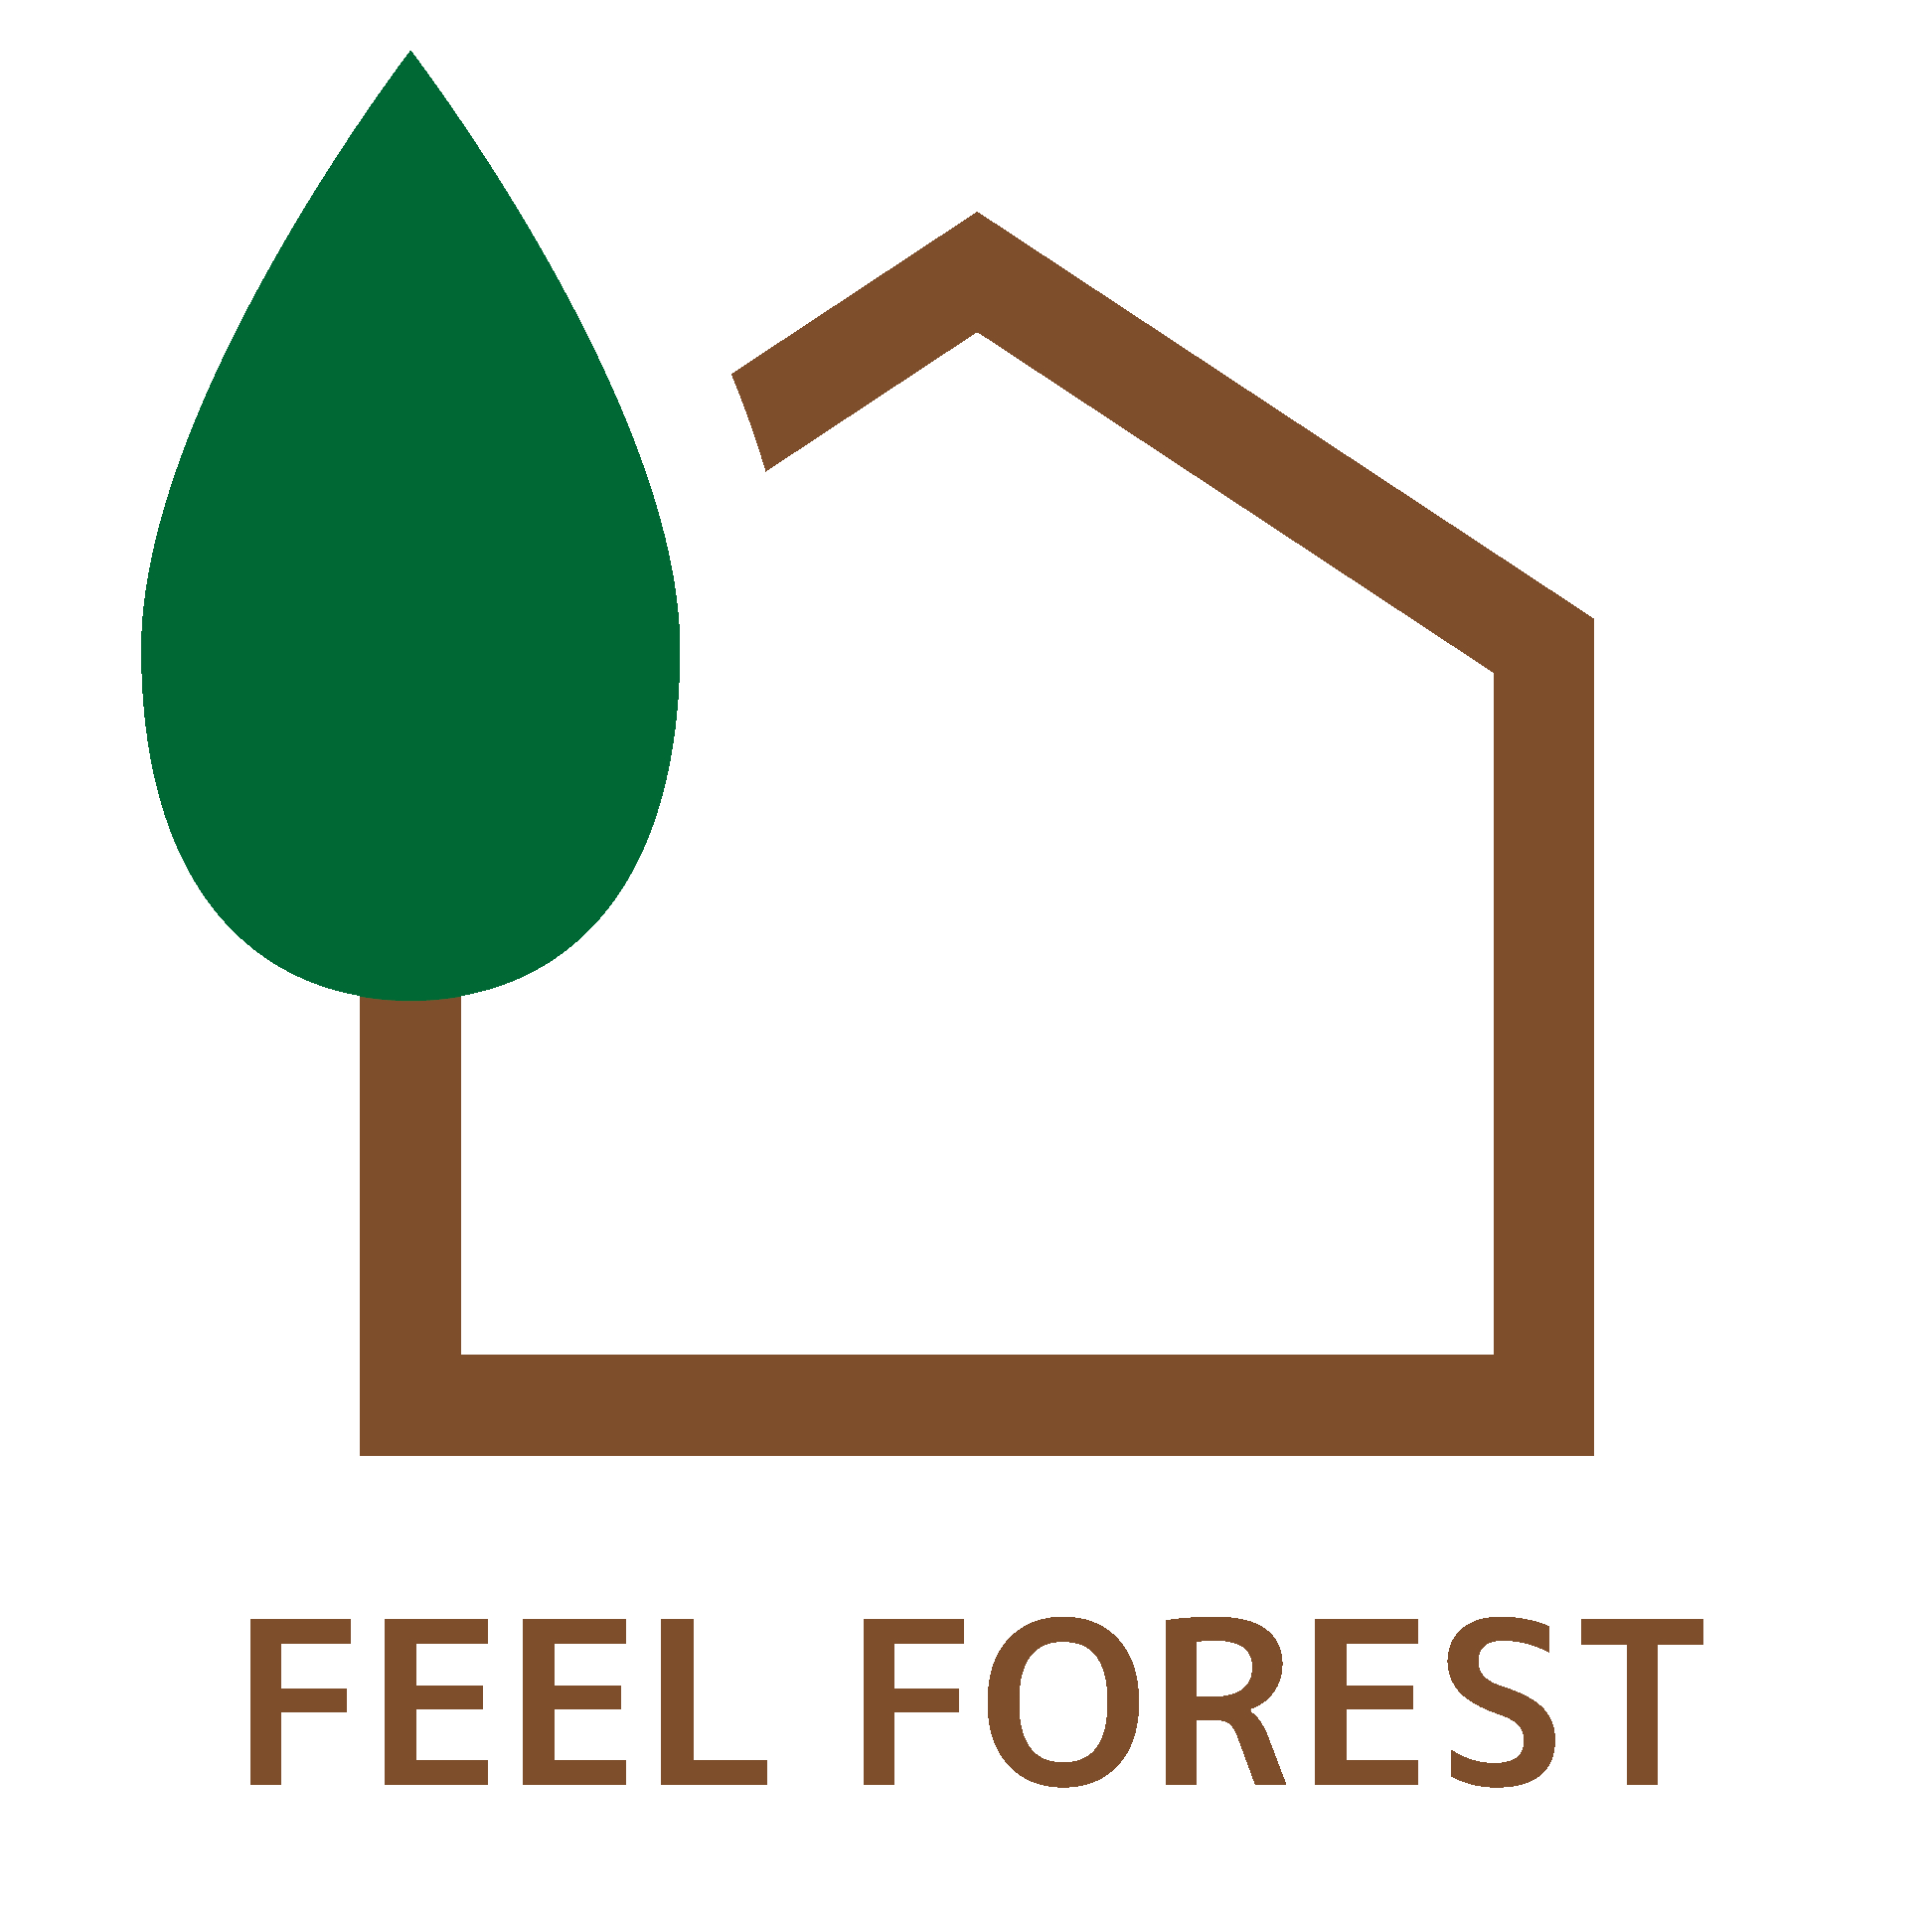 ロゴマークが変わりました Indo Staff Blog スタッフブログ 無垢の木と自然素材でつくる家 有限会社フィールフォレスト